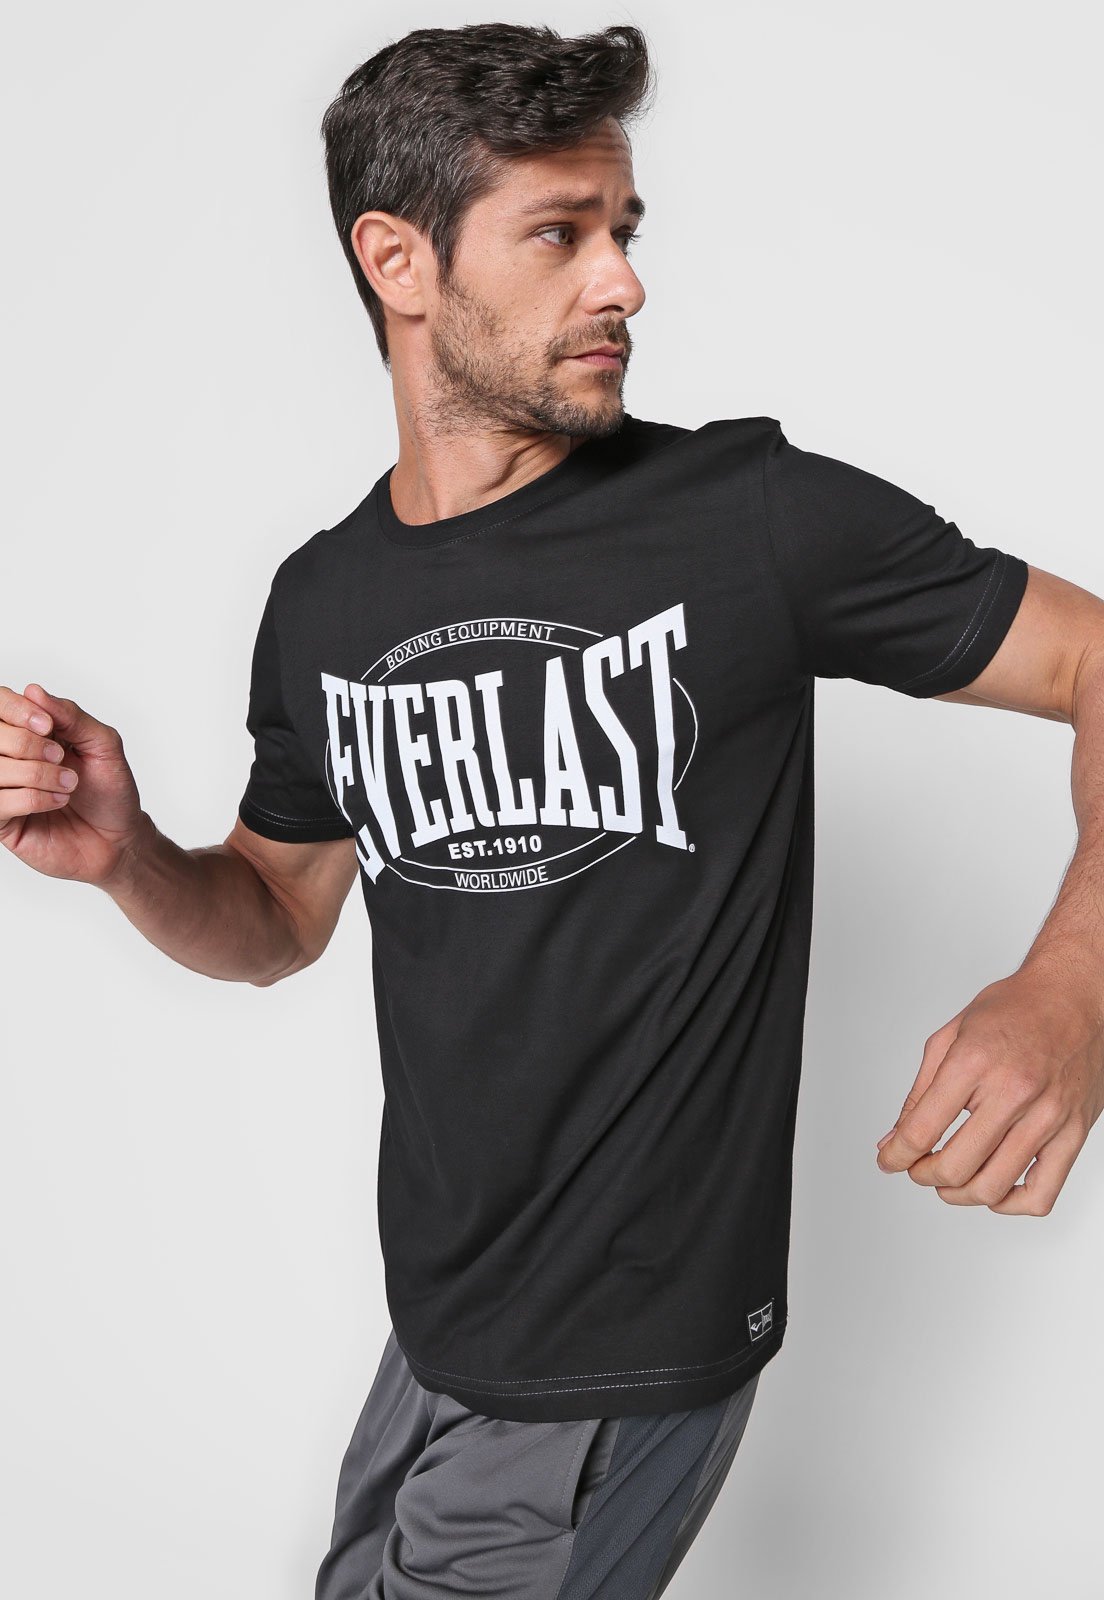 Comprar Camisetas Everlast Online